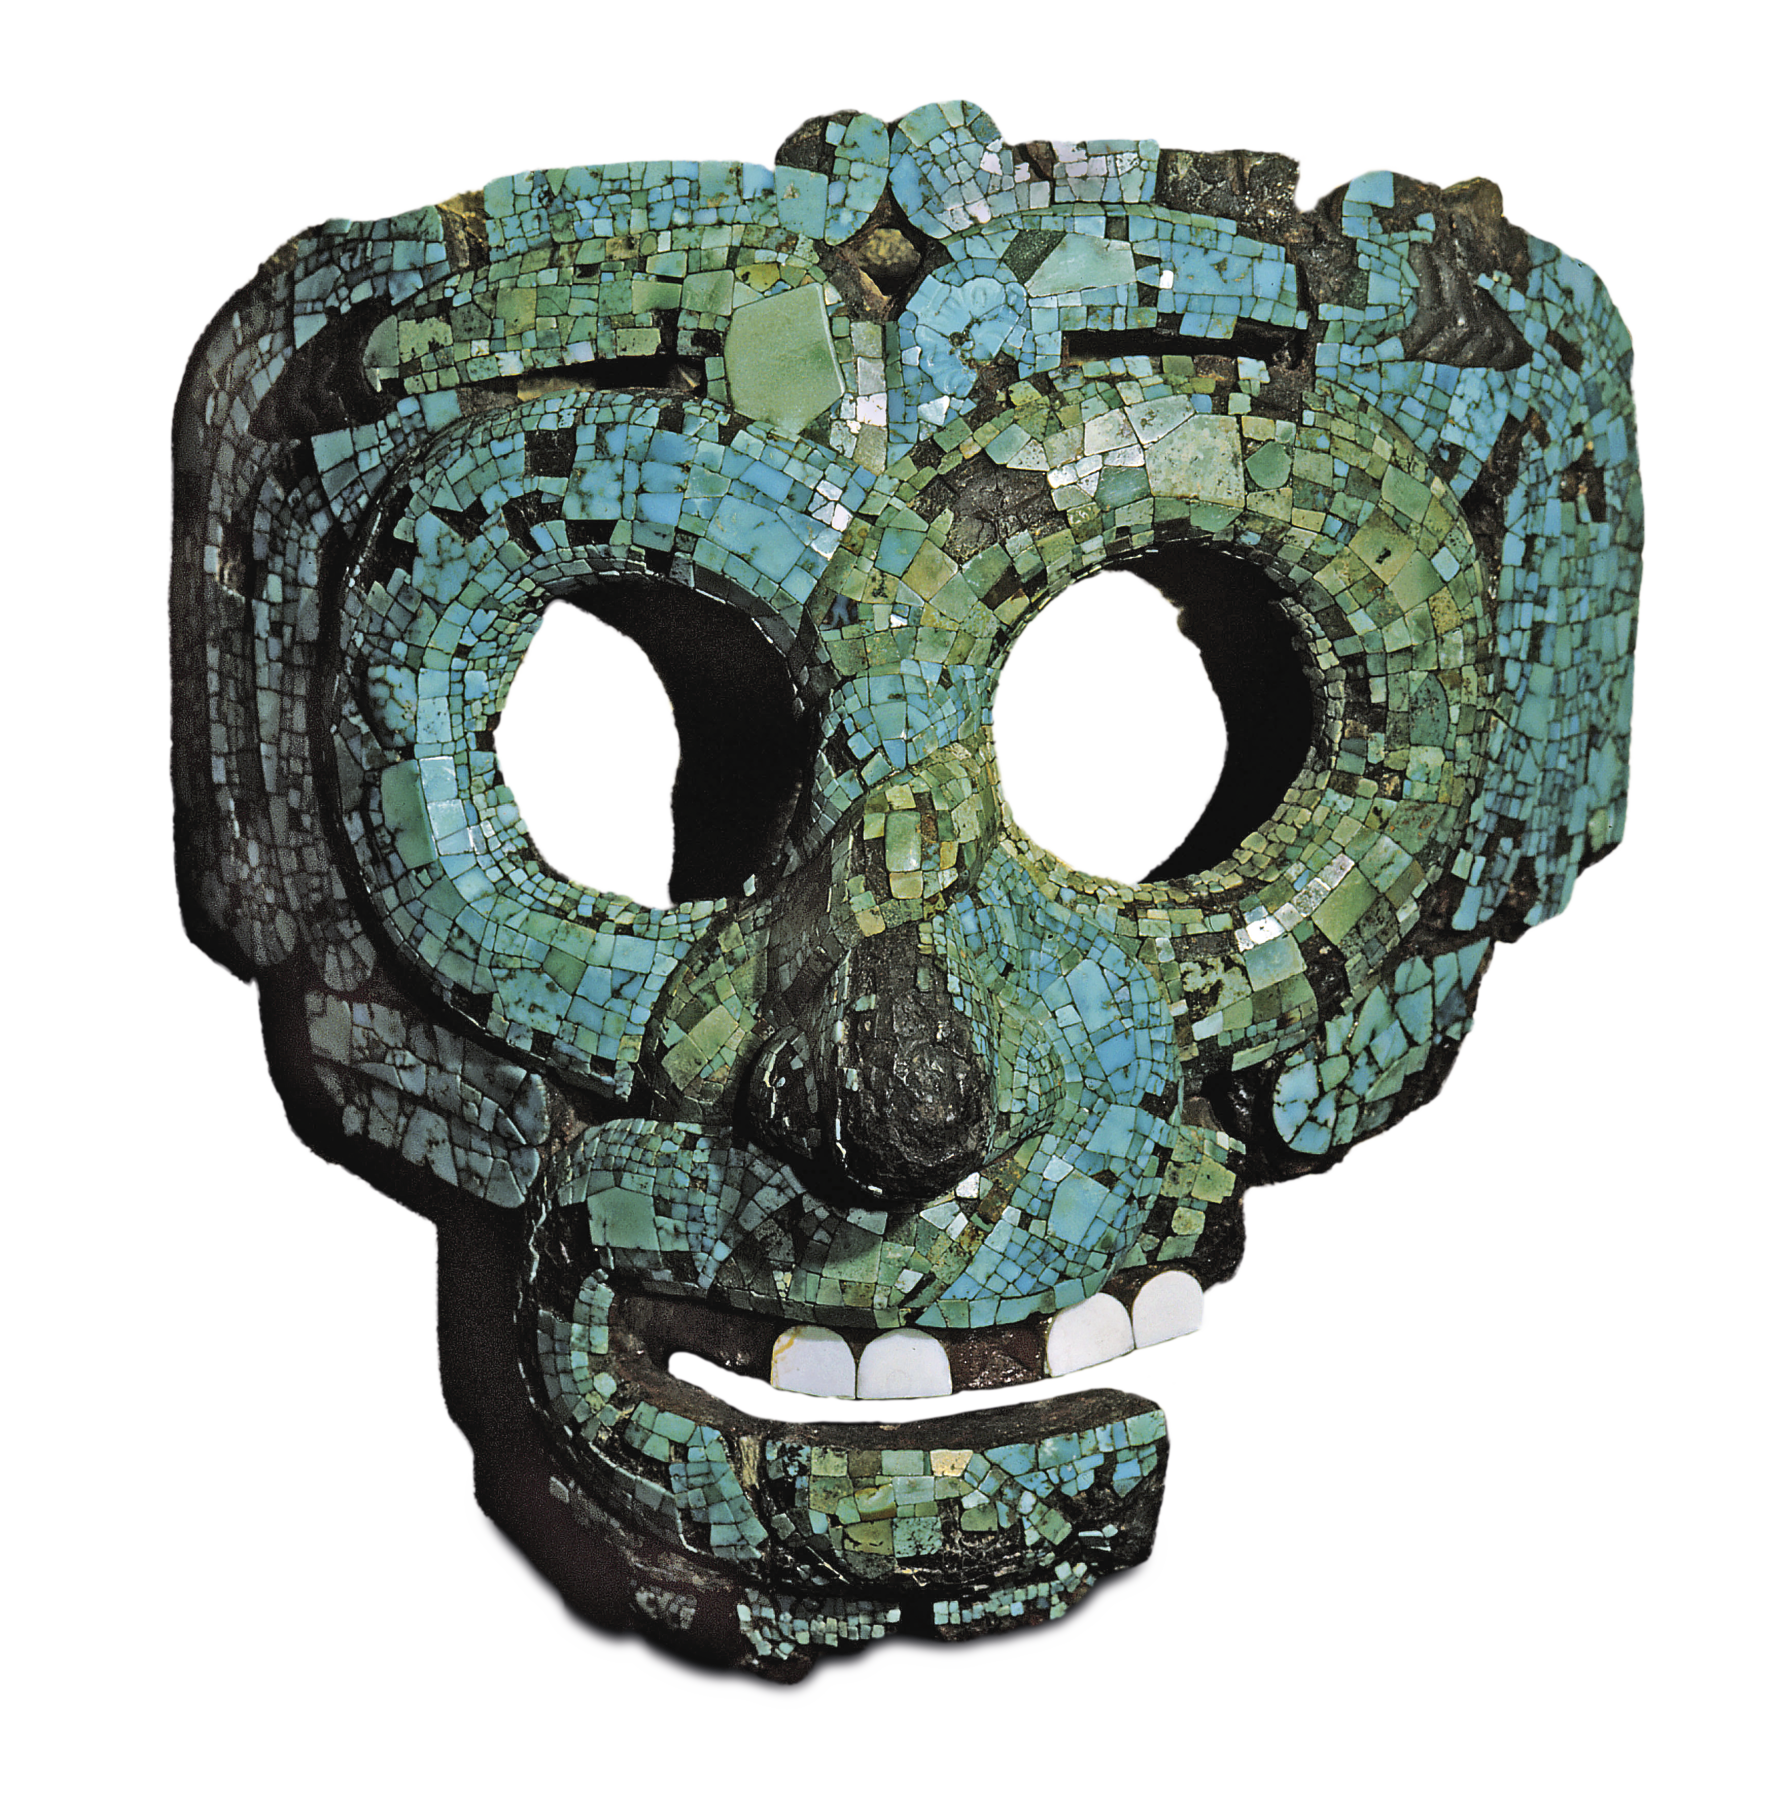 Fotografia. Máscara em feições humanas feita coberta por um mosaico de pedras pequenas em tons de turquesa, com variações desde verde e a azul claro. Dois círculos vazados correspondem ao formato de dois olhos. A boca também é vazada, forma um sorriso leve e têm quatro pequenos dentes brancos.